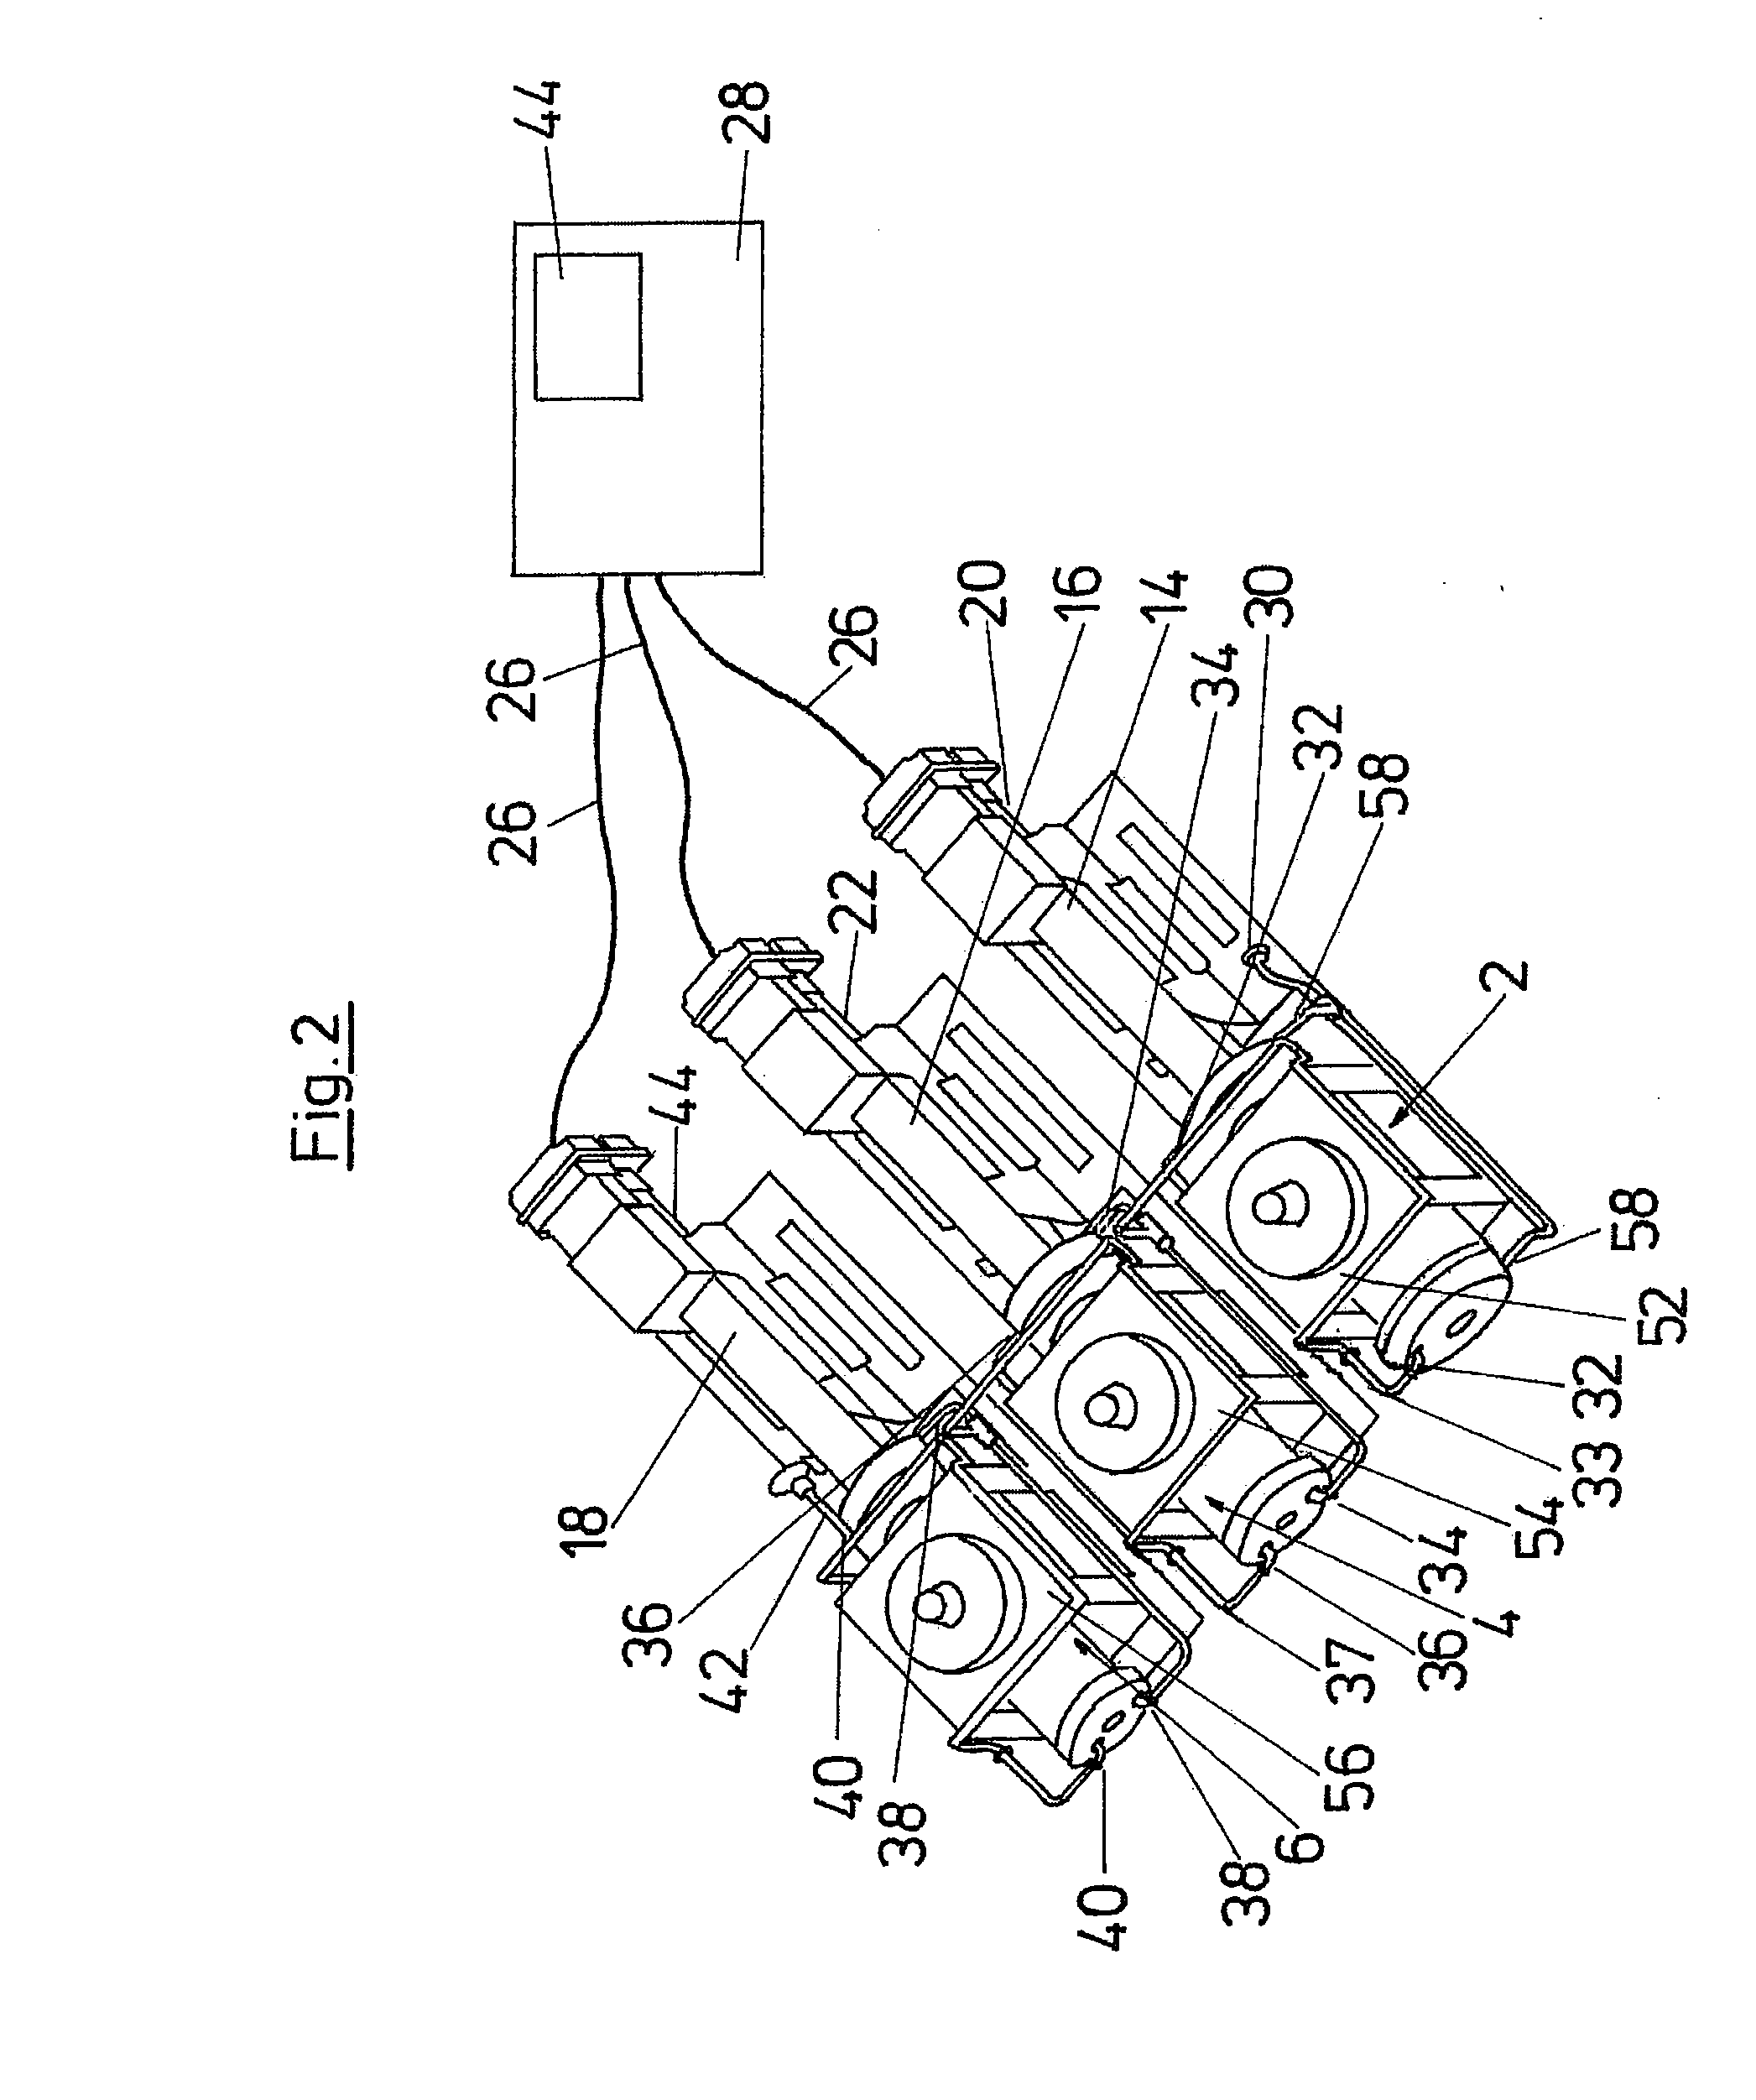 Multi-stage piston compressor